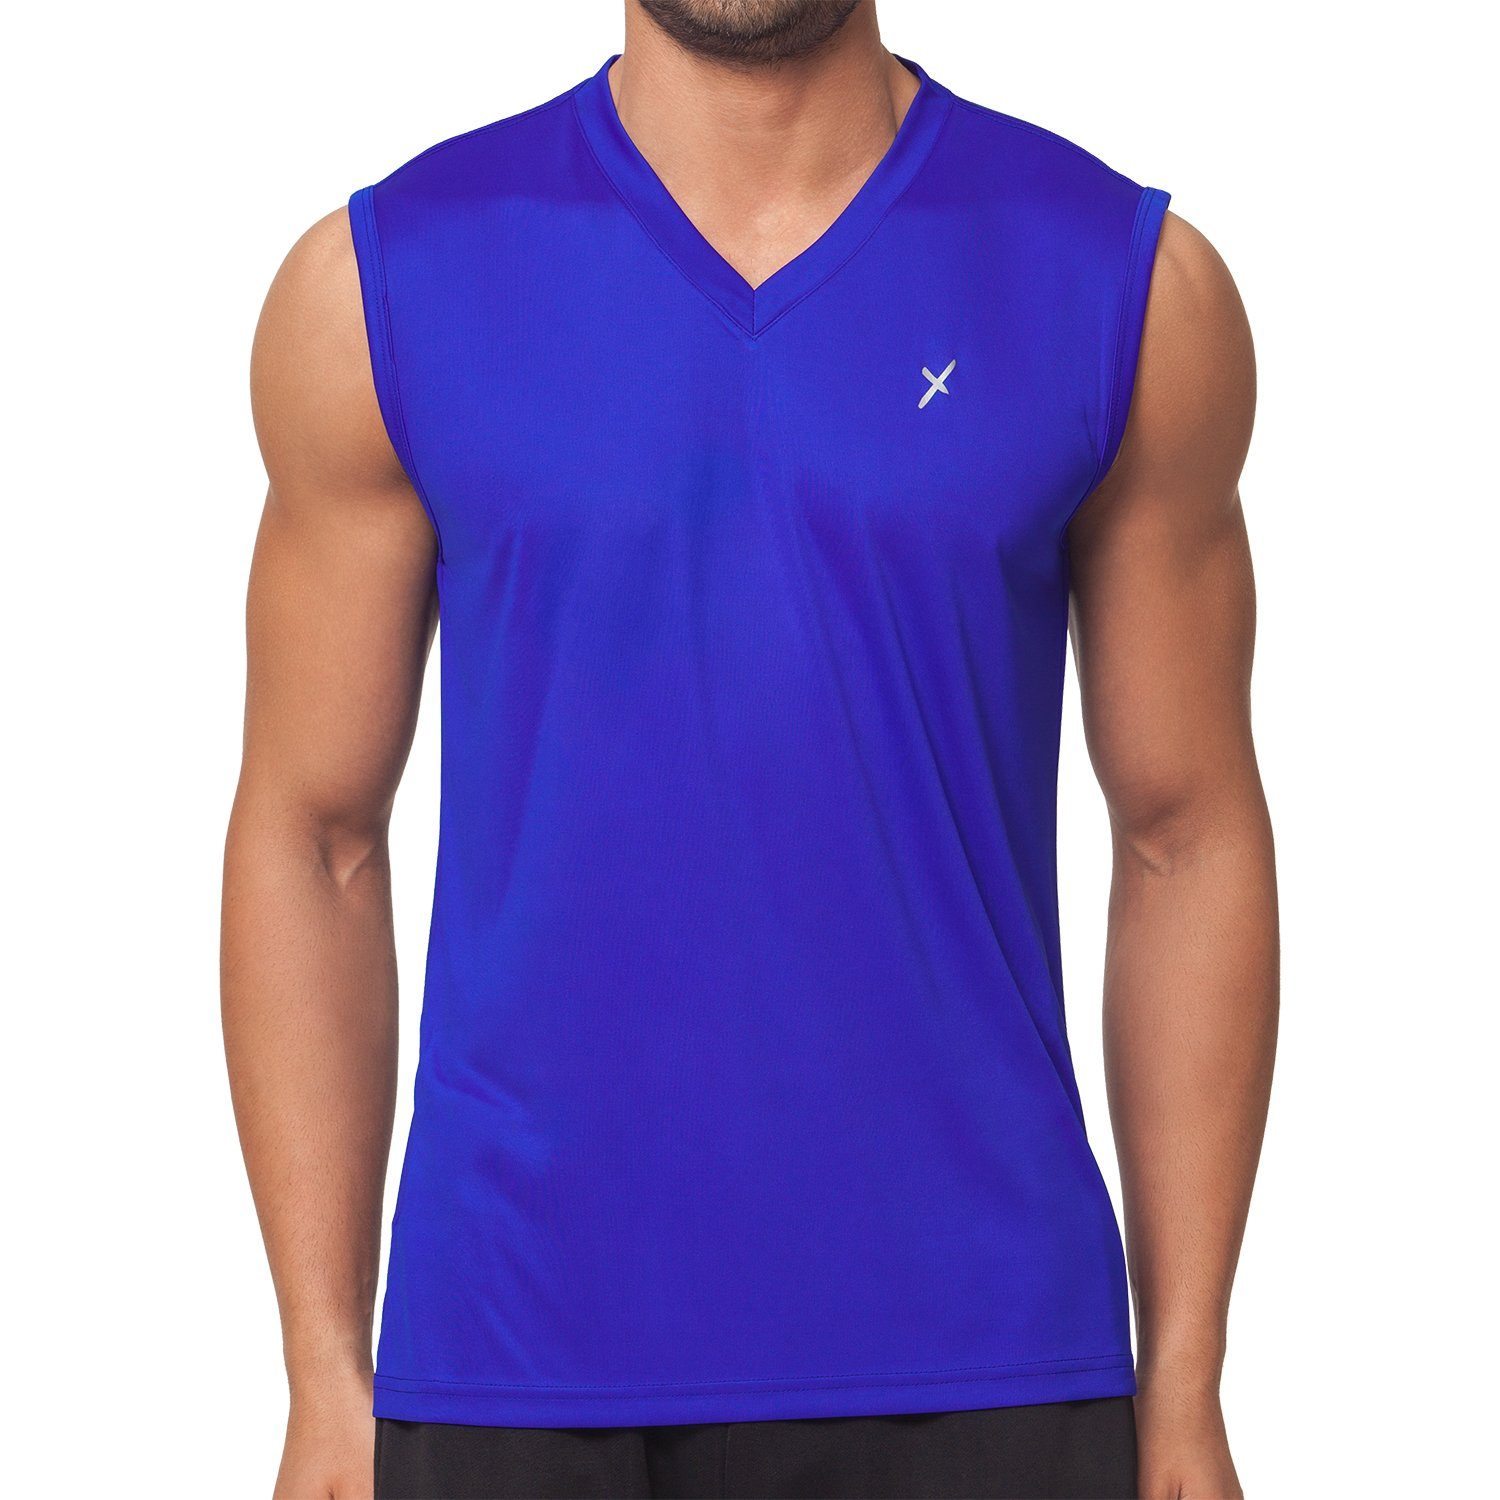 CFLEX Trainingsshirt Herren Sport Shirt Sportswear Collection Royalblau Muscle-Shirt Fitness